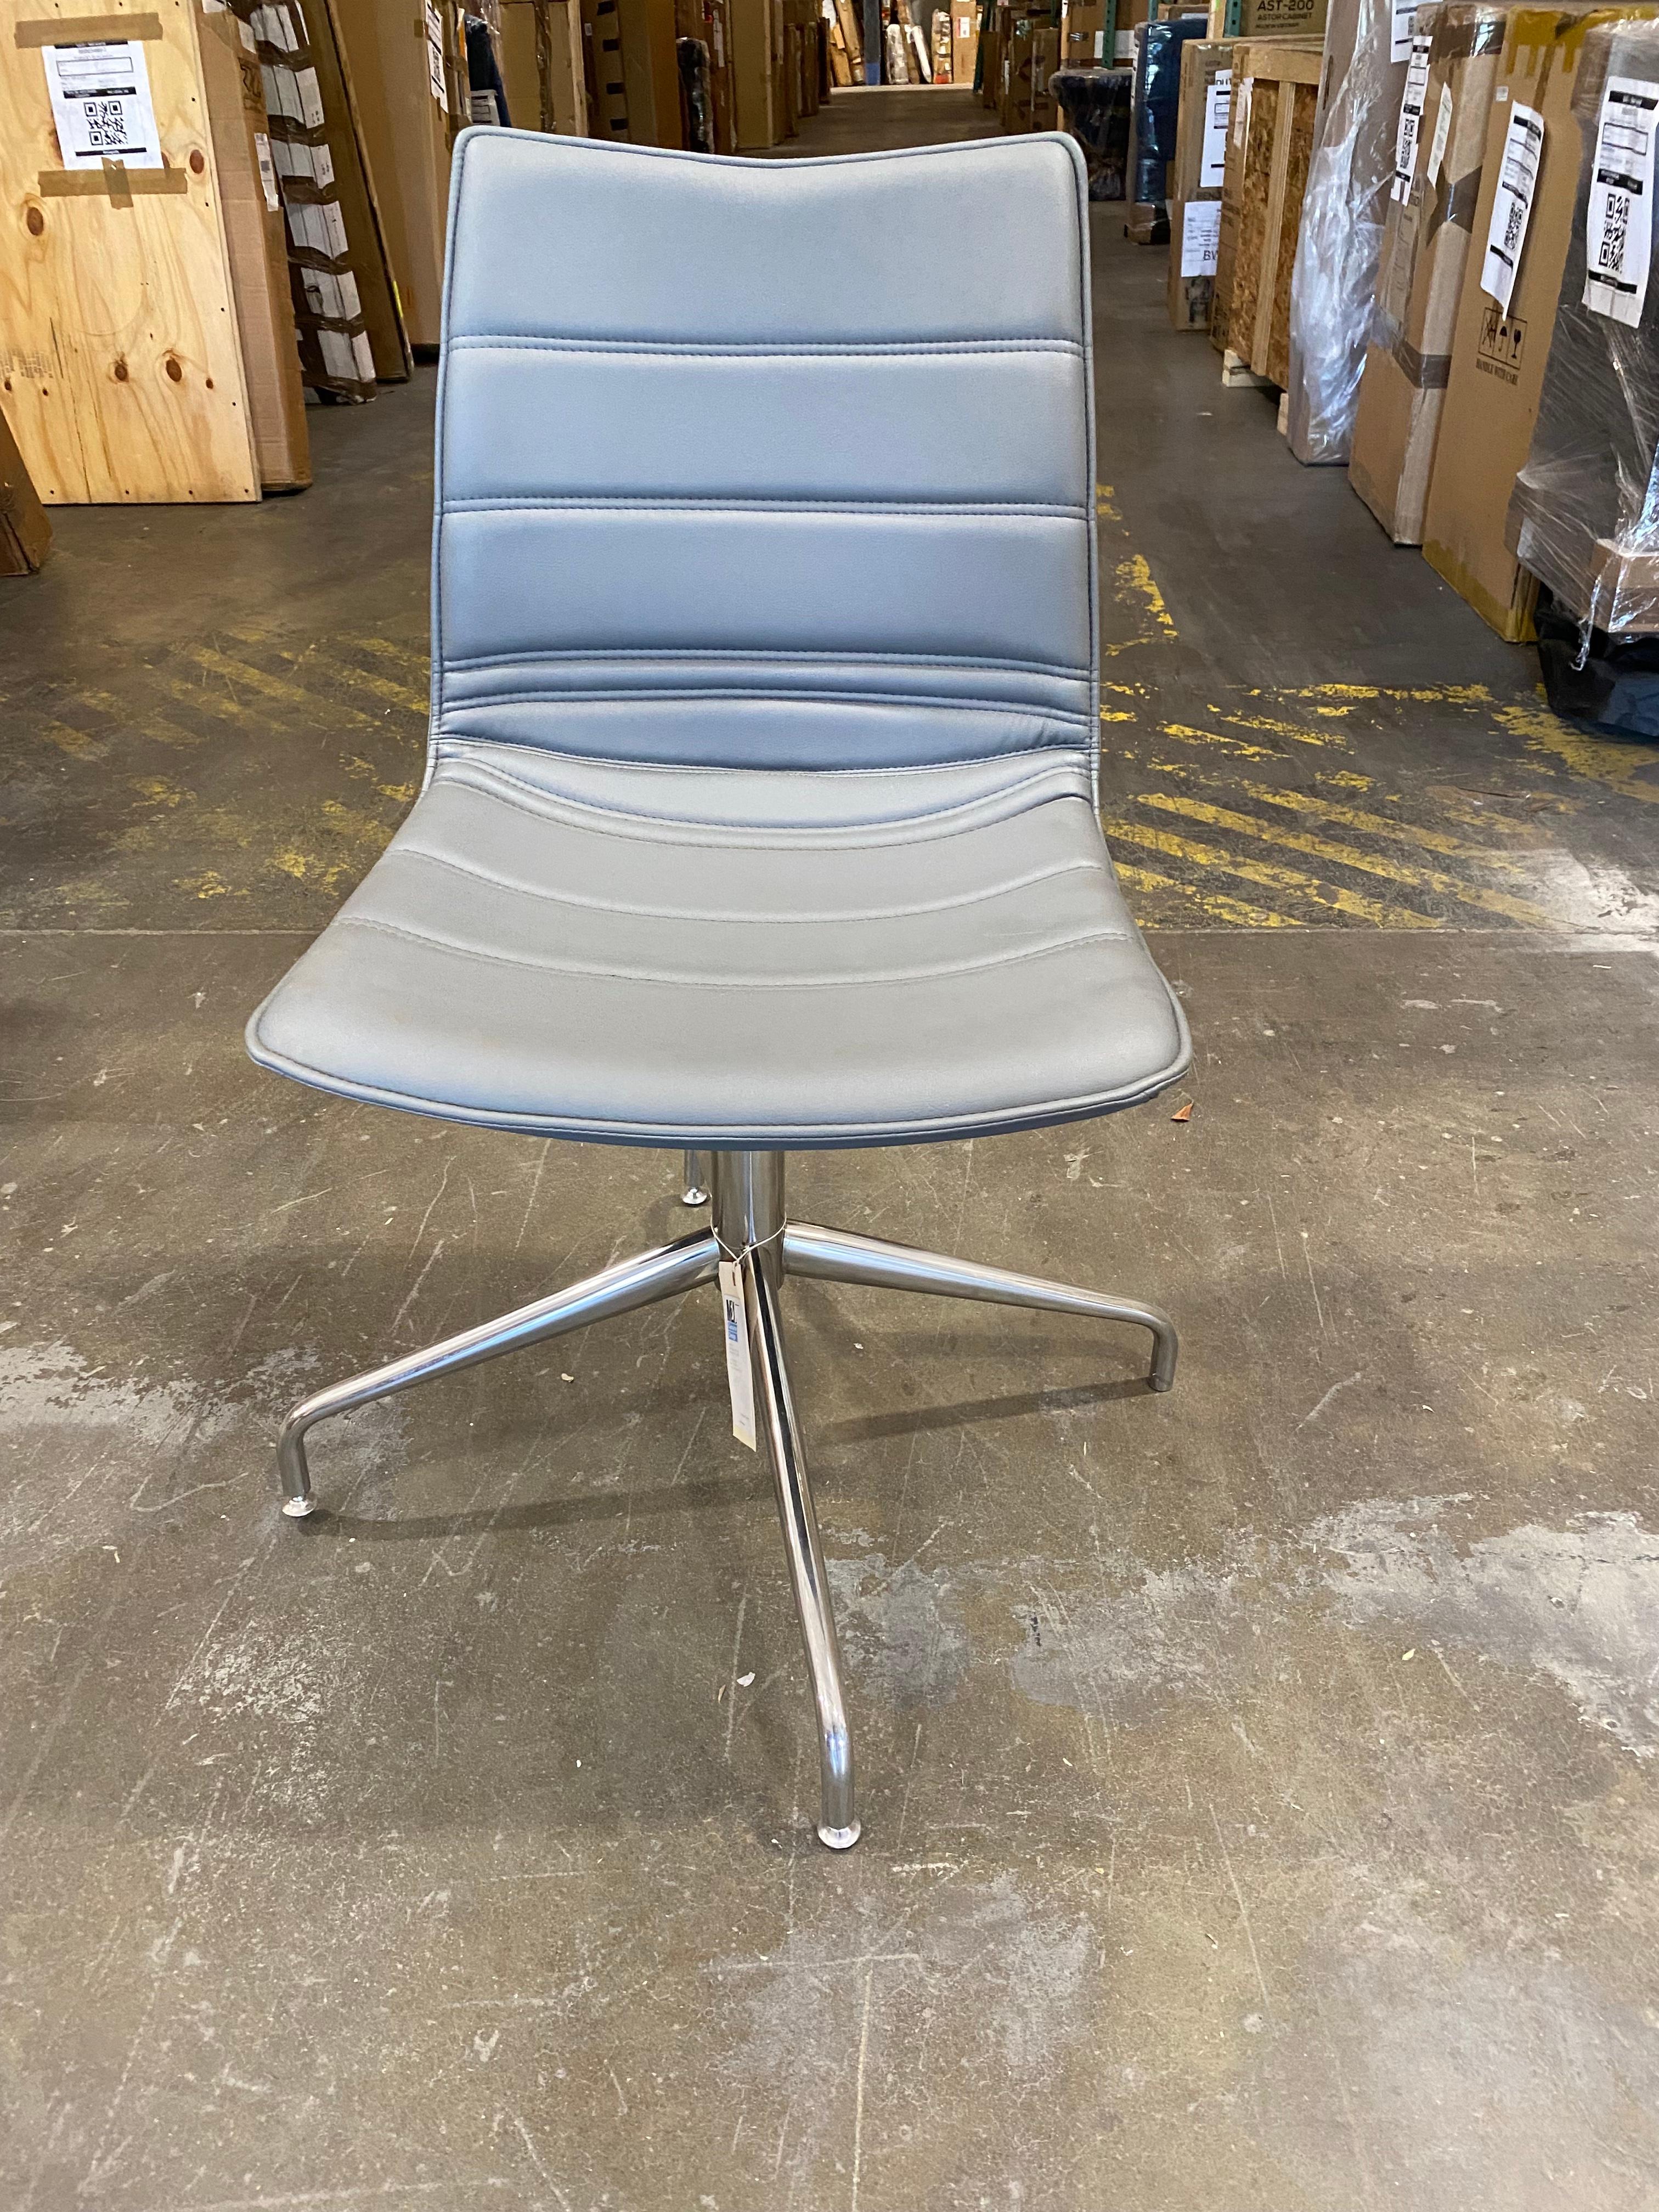 Swivel chair
4 stars chromed steel base
padded and upholstered